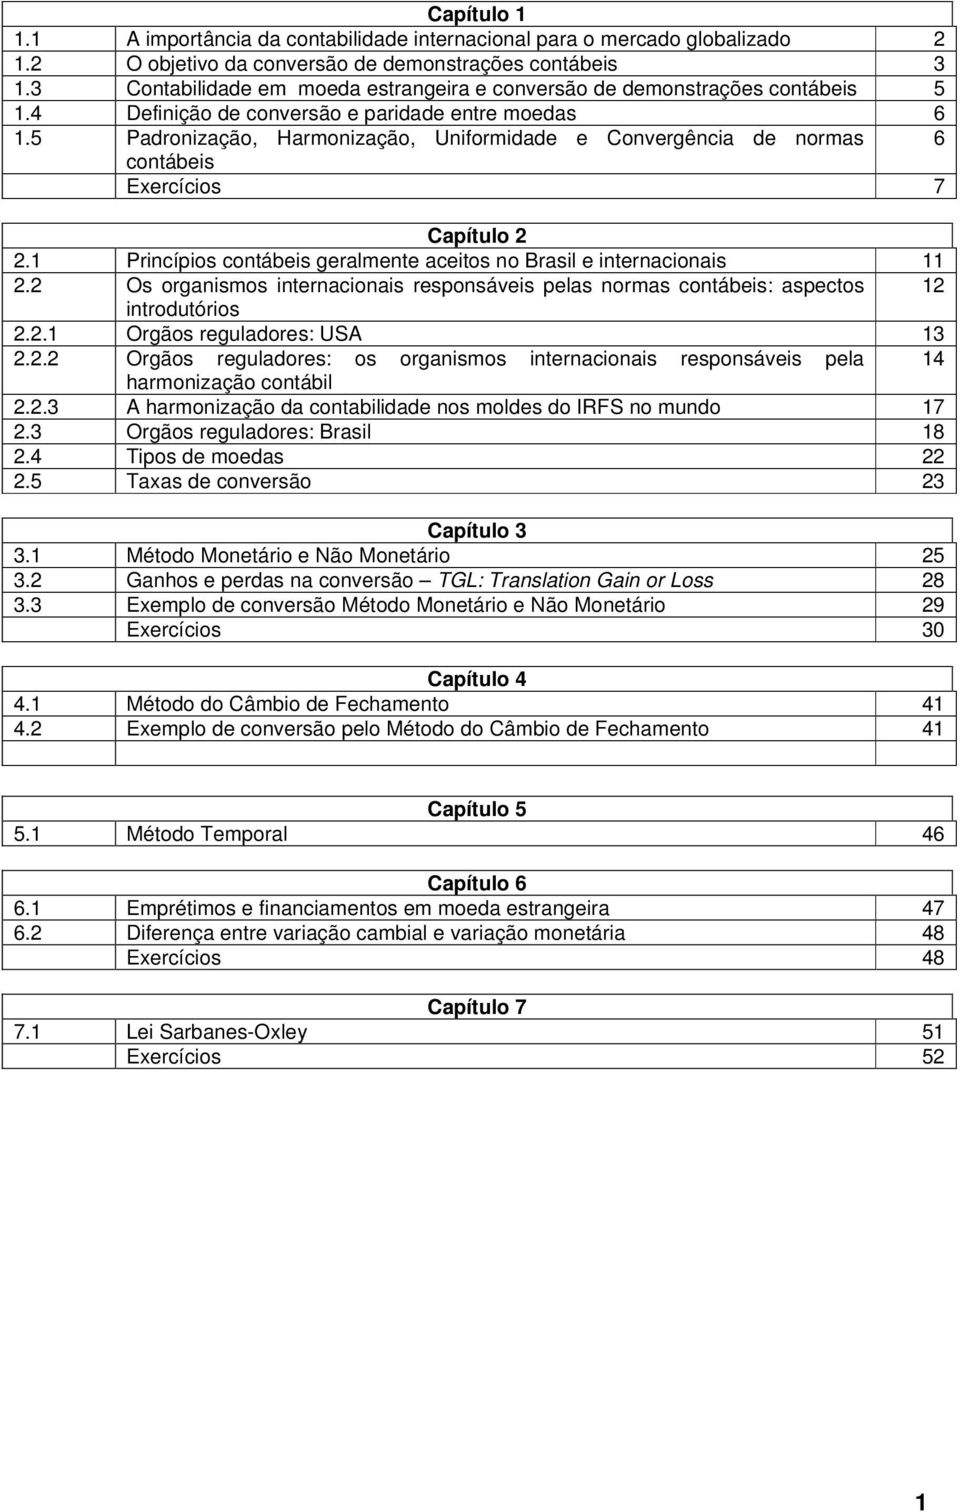 5 Padronização, Harmonização, Uniformidade e Convergência de normas 6 contábeis Exercícios 7 Capítulo 2 2.1 Princípios contábeis geralmente aceitos no Brasil e internacionais 11 2.